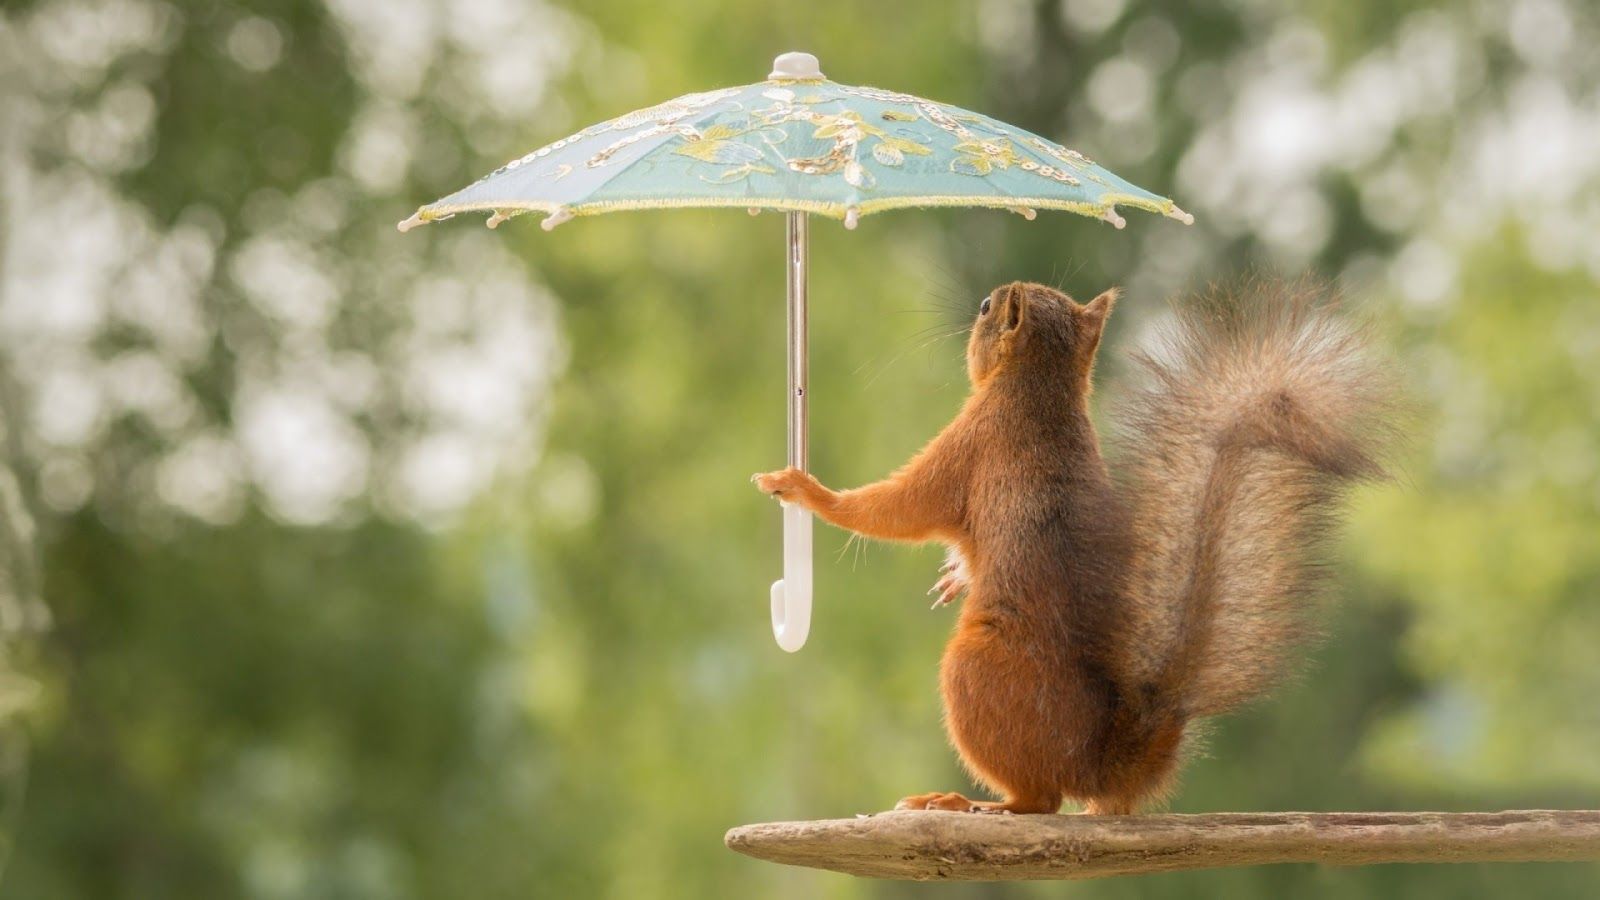 Wallpaper HD: Funny Squirrel with Umbrella Funny Wallpaper